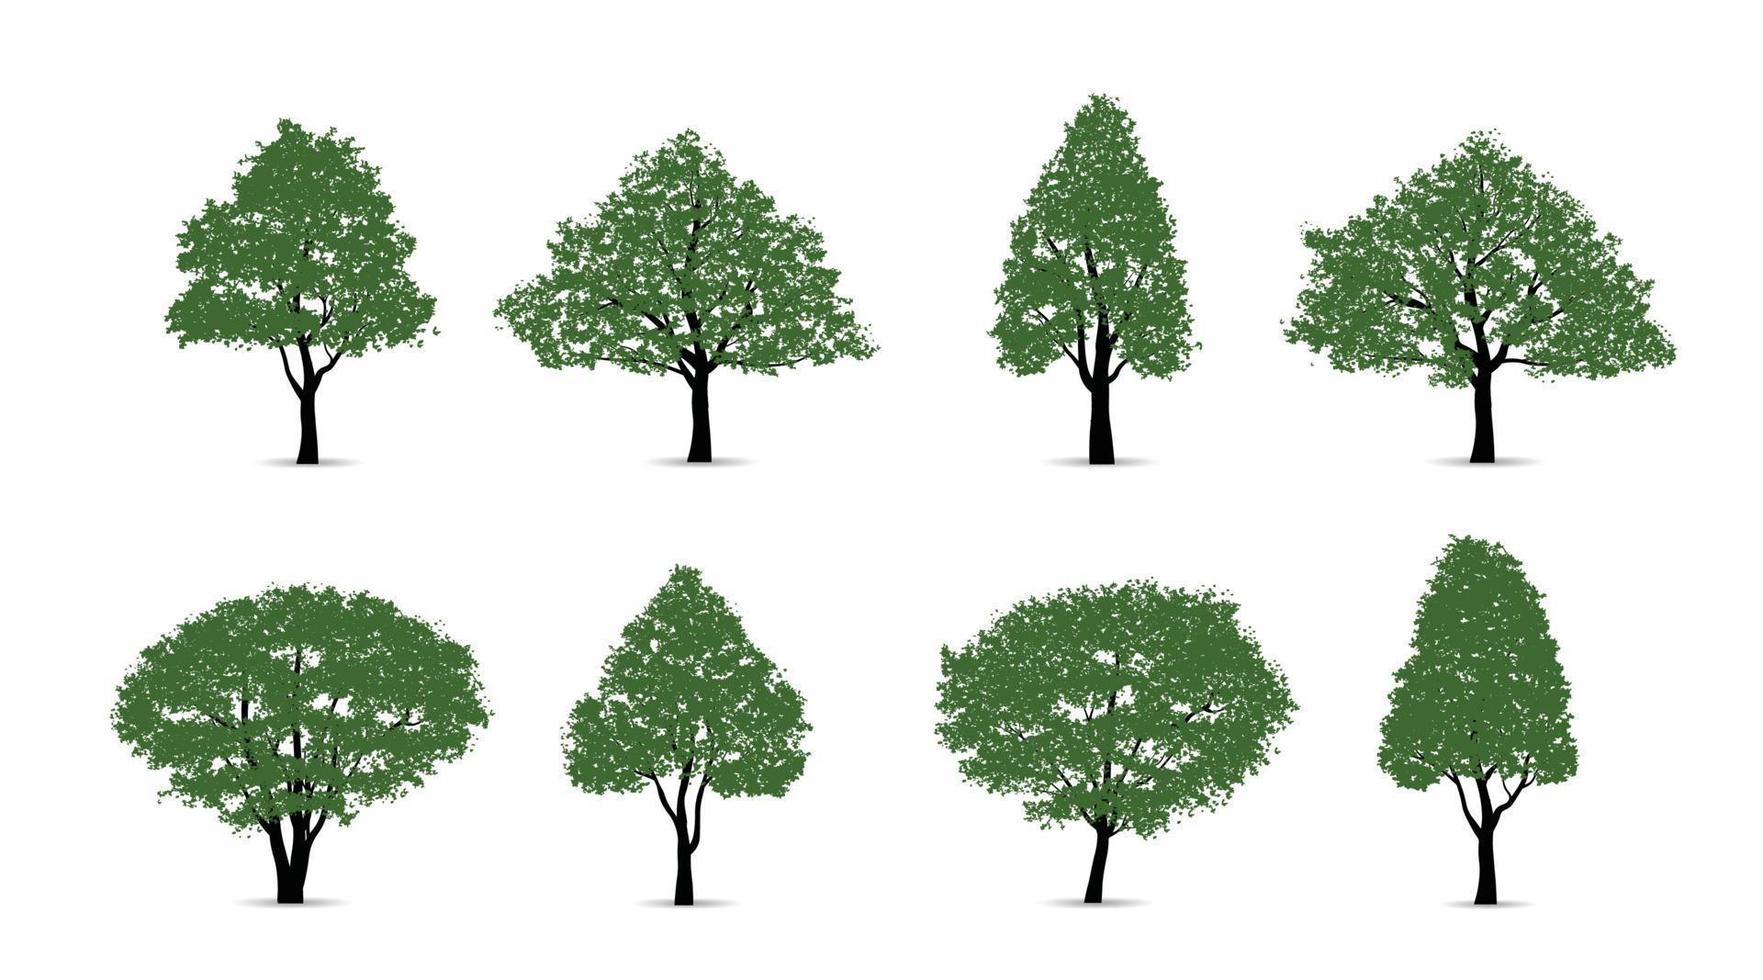 uppsättning av grön träd isolerat på vit bakgrund för landskap design och arkitektonisk kompositioner med bakgrunder. vektor illustration.